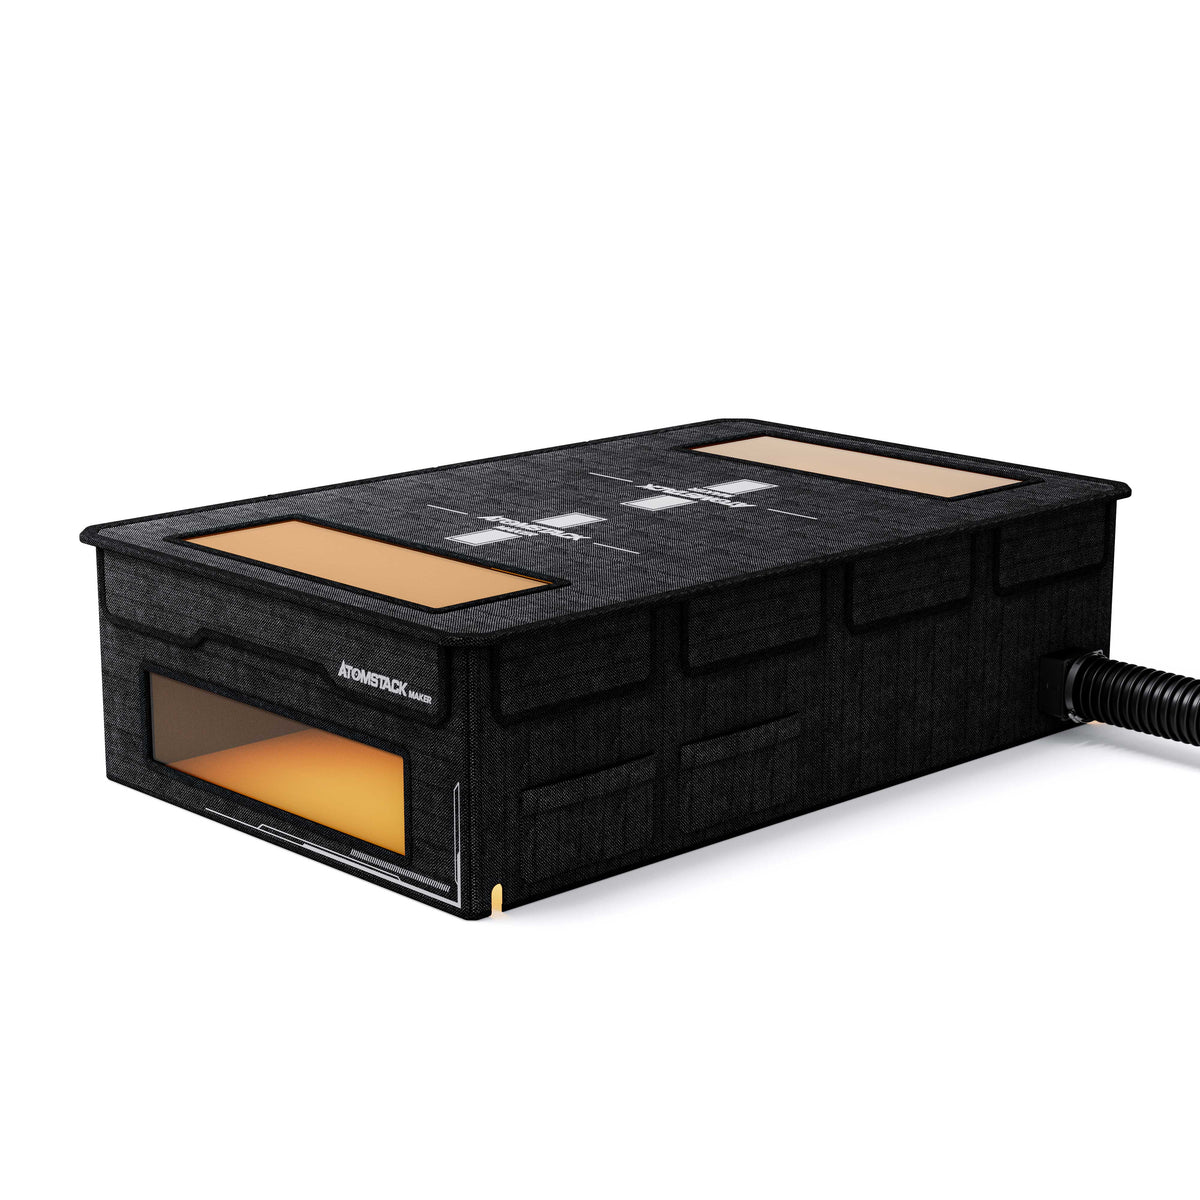 Caja AtomStack FB2 Plus - Caja protectora para máquina de grabado láser a prueba de polvo